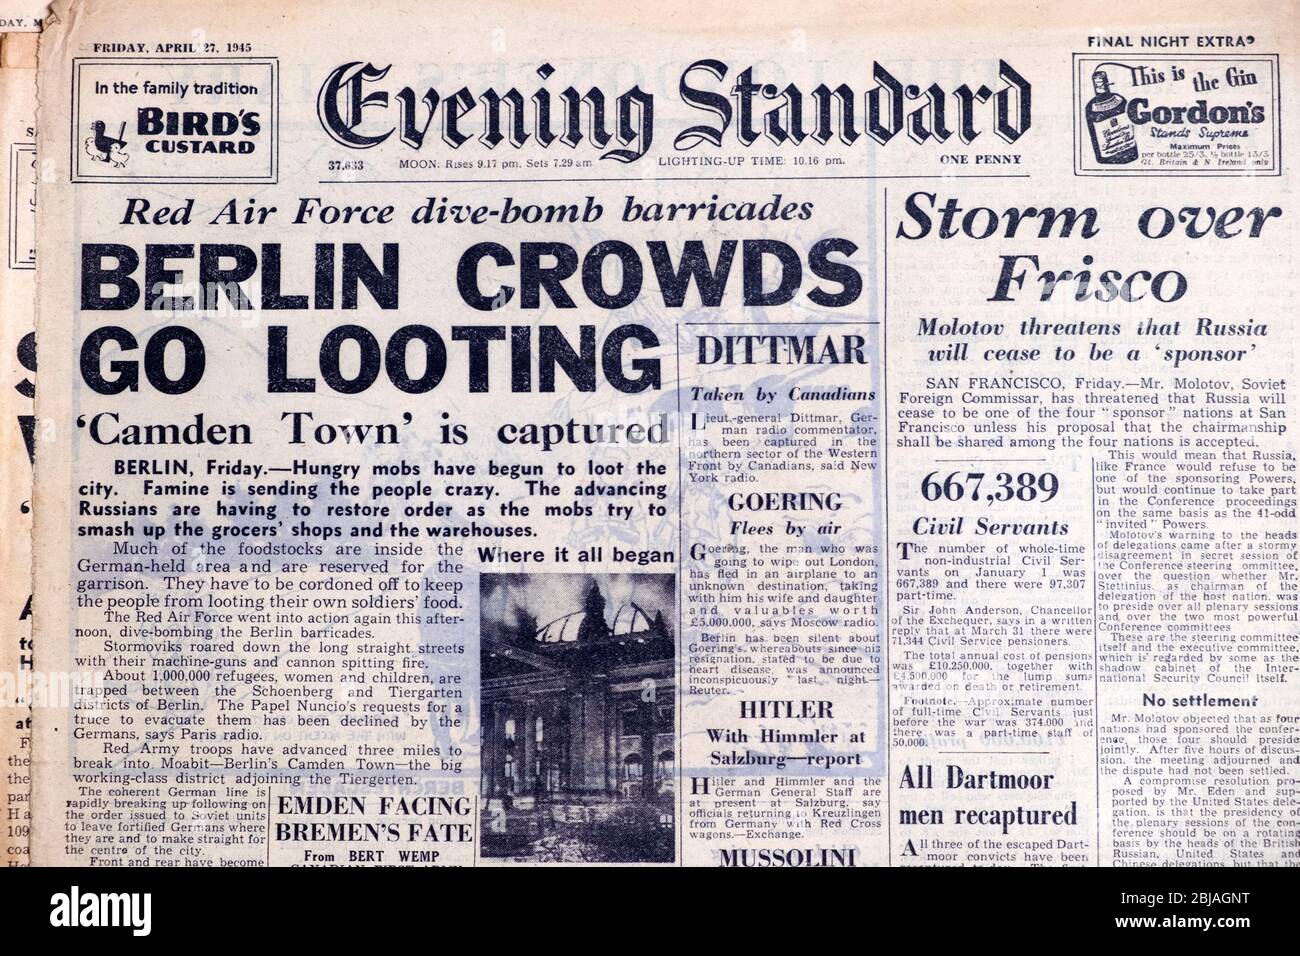 Título del periódico "Berlin Crowds Go saquing" "Camden Town is captred" "barricadas de bombas de buceo de la Red Air Force" 27 de abril de 1945 Londres Reino Unido Foto de stock